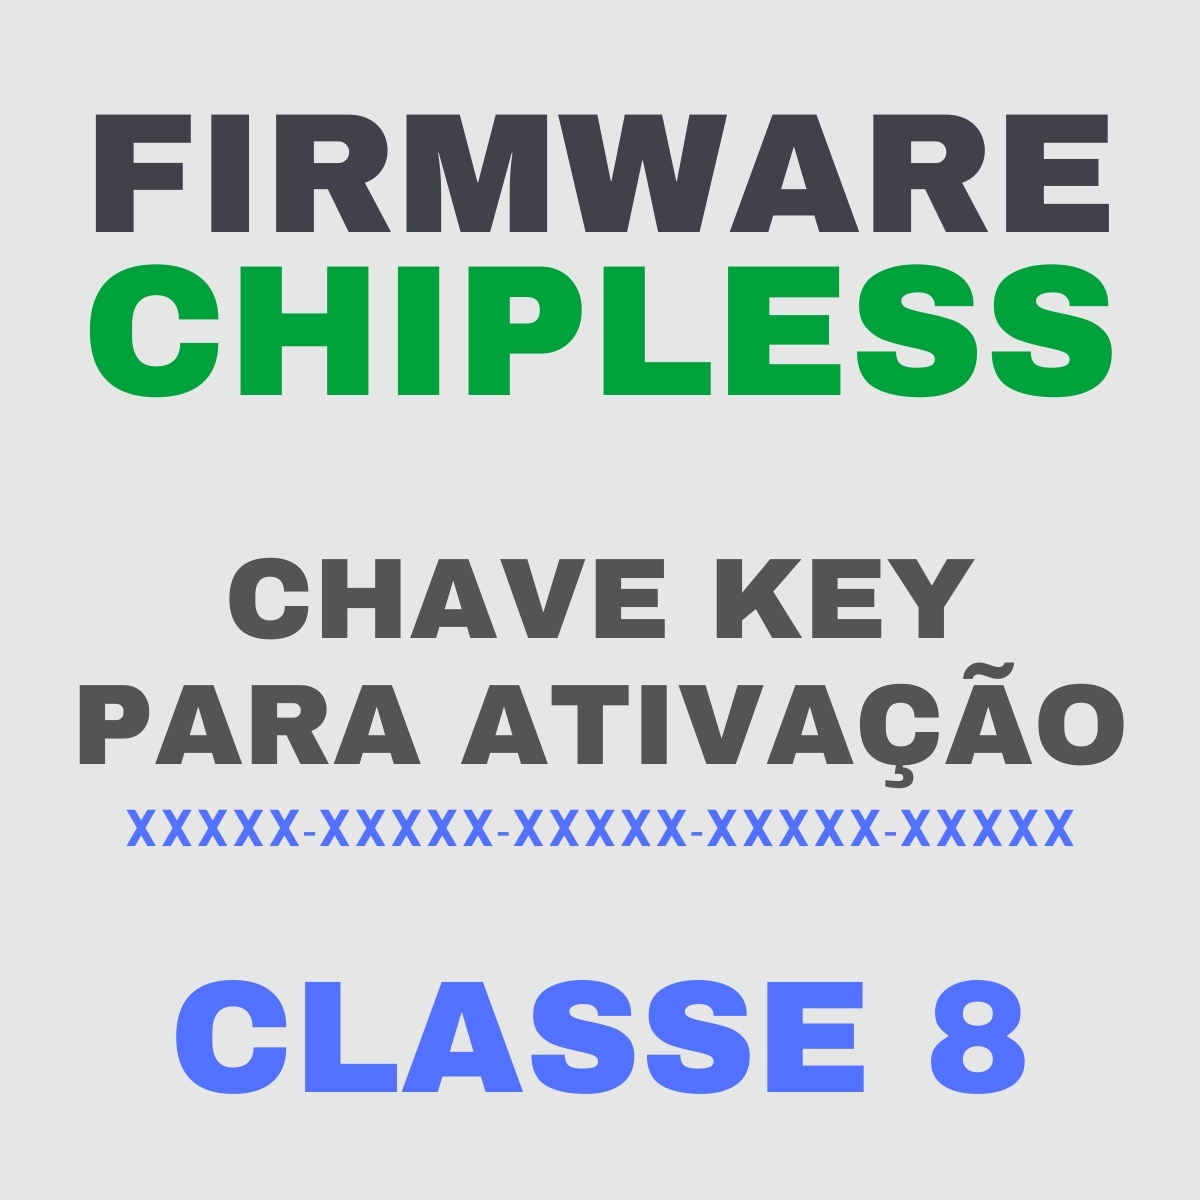 Chave Key de Ativação Firmware ChipLess para Impressora Epson - Classe 8